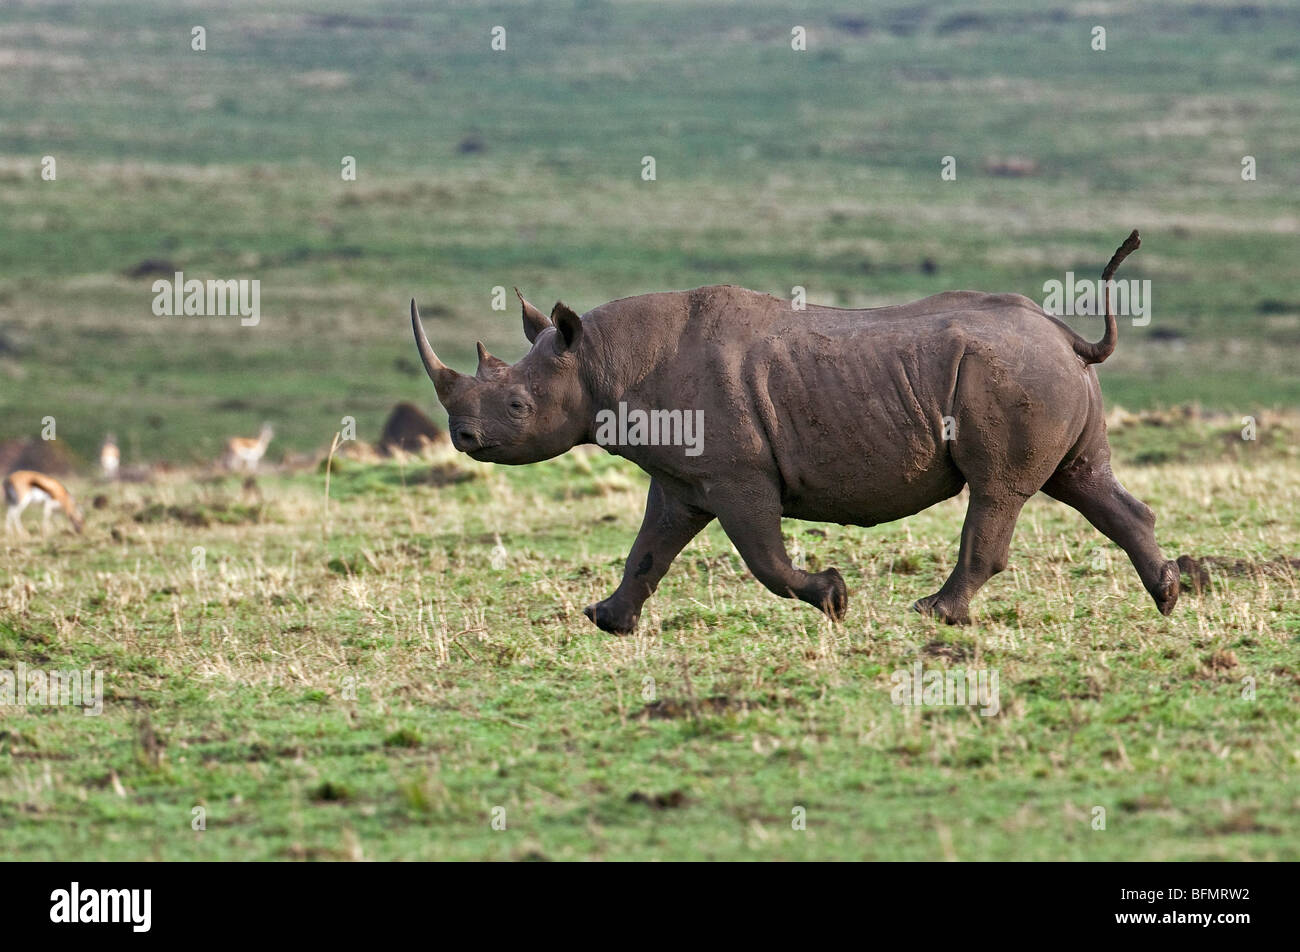 Au Kenya. Un rhinocéros noir traverse la Masai Mara National Reserve. Contrairement à la croyance populaire, les rhinocéros peut courir très rapidement. Banque D'Images